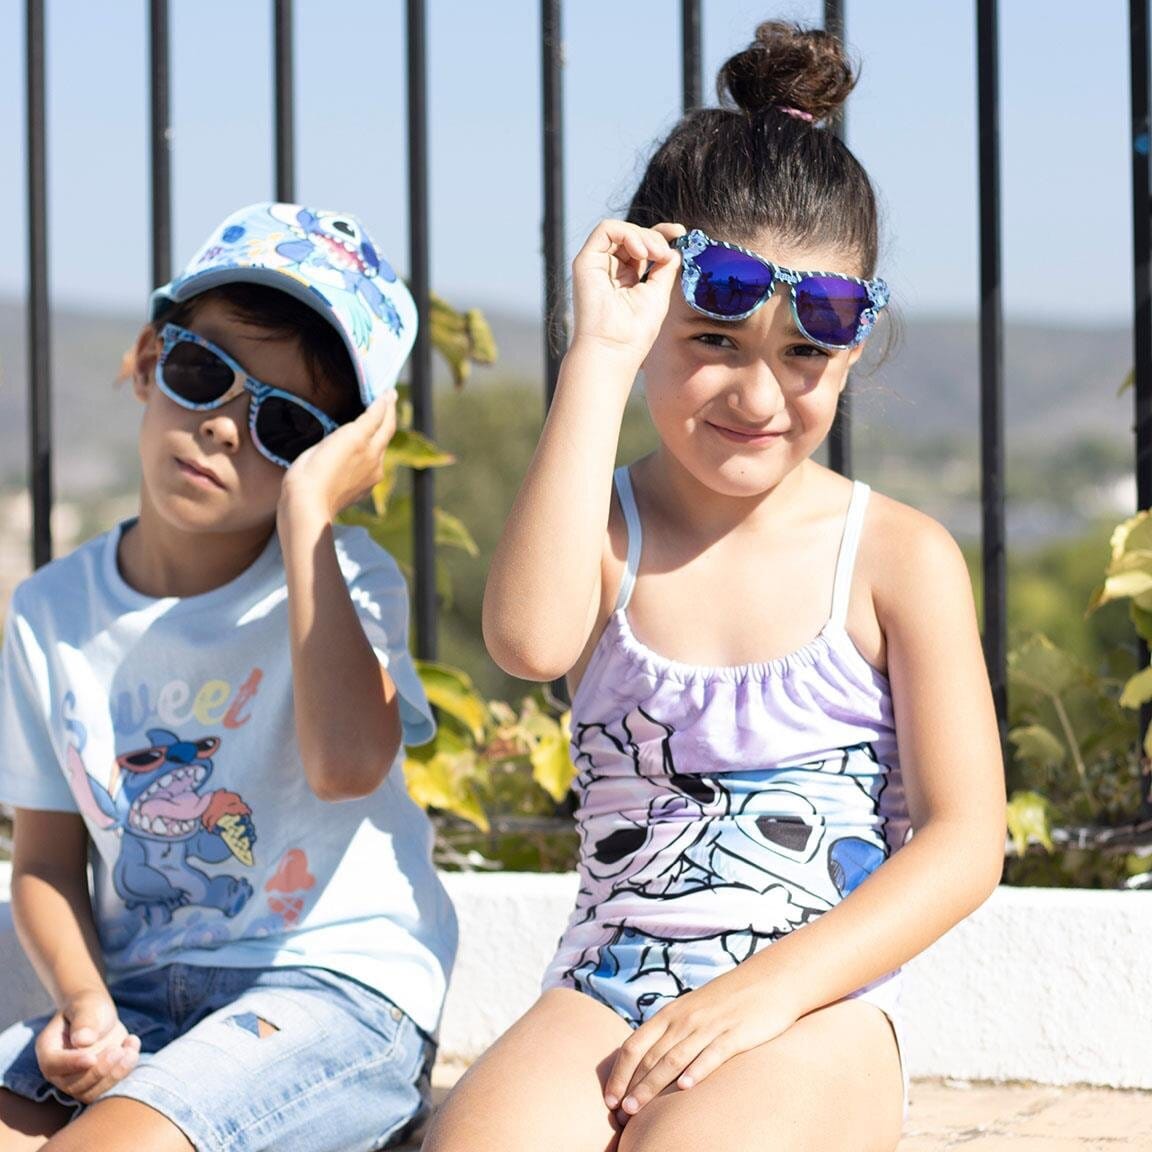 Lilo & Stitch - Pet en zonnebril voor kinderen